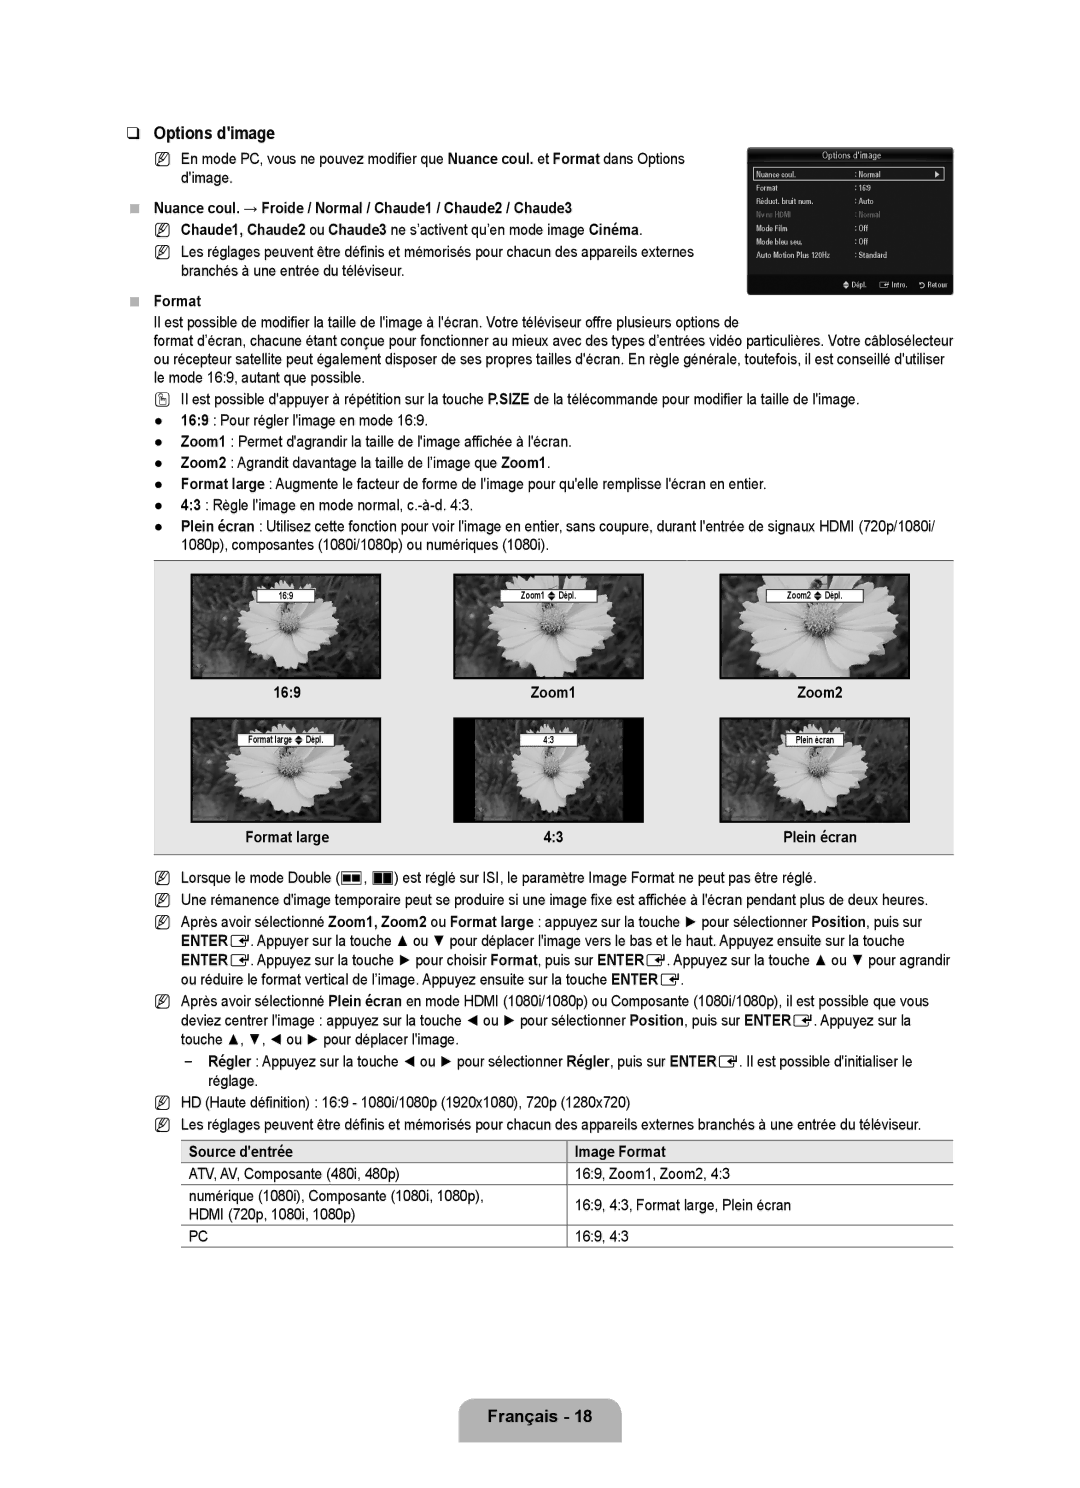 Samsung LN6B60 user manual Options dimage, Format large Plein écran, Source dentrée Image Format 